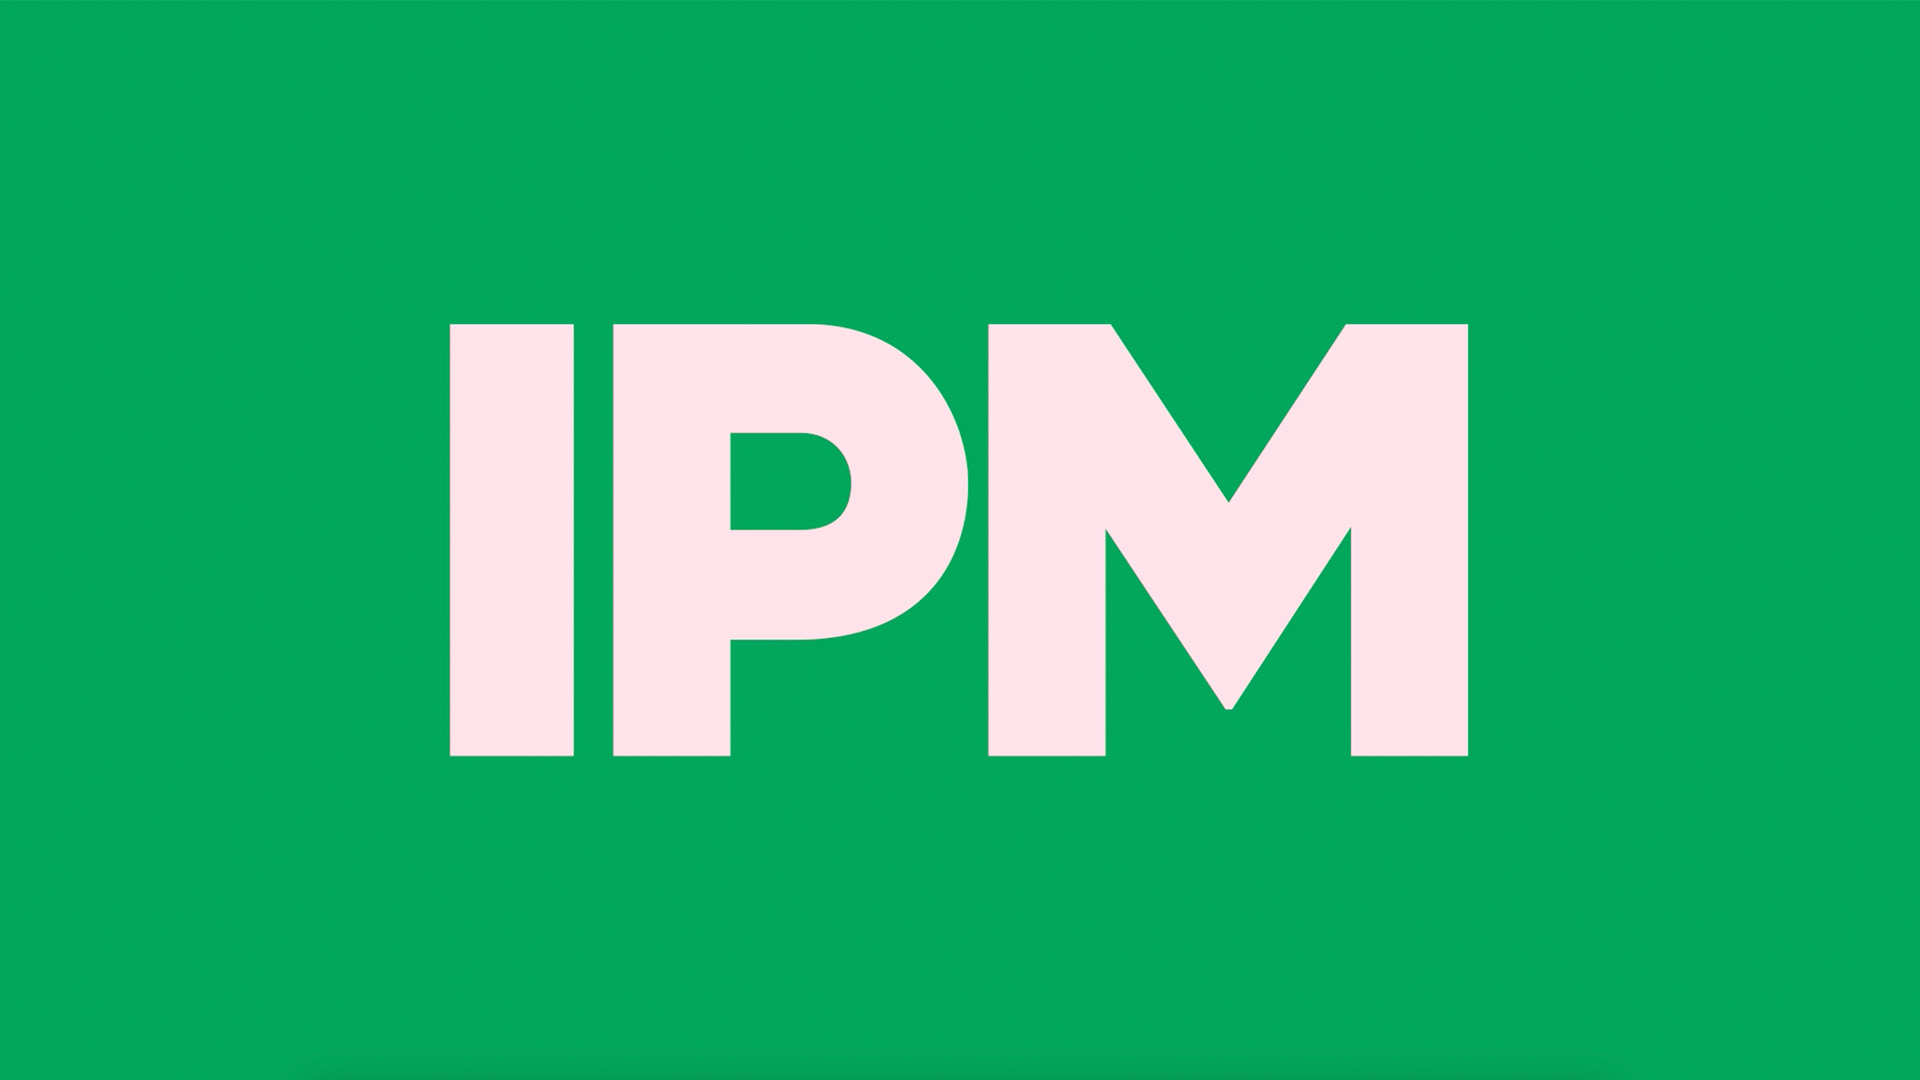 IPM logo poster image